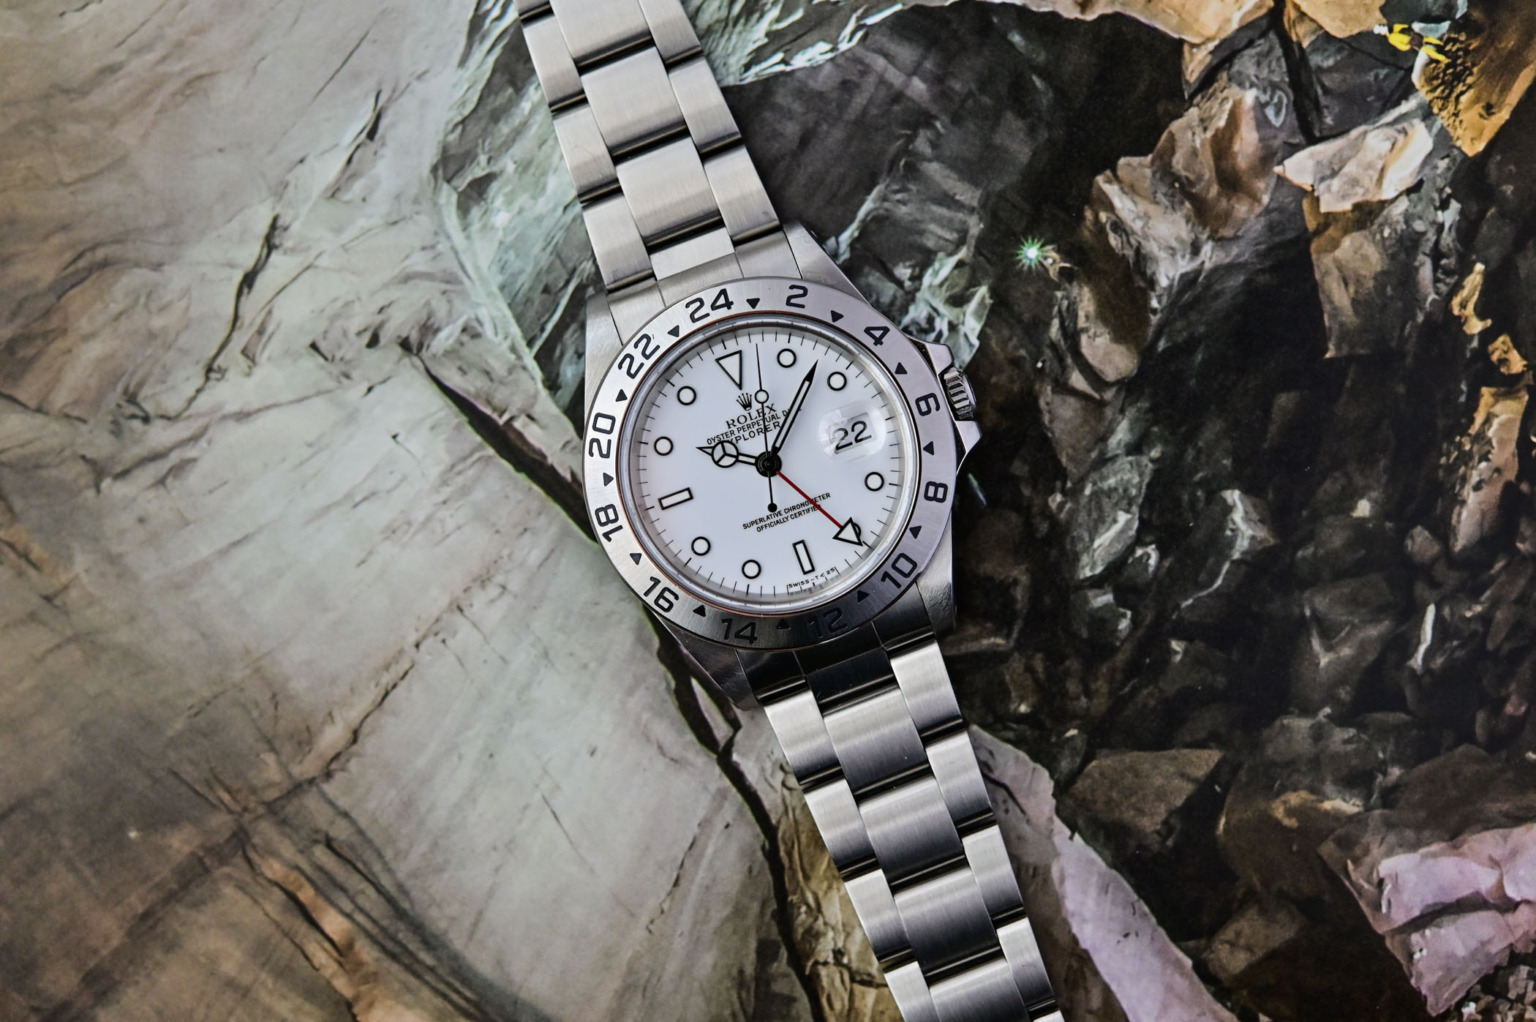 Die Rolex Replica Explorer II Polar 16570, eine der besten Youngtimer-Uhren der Welt